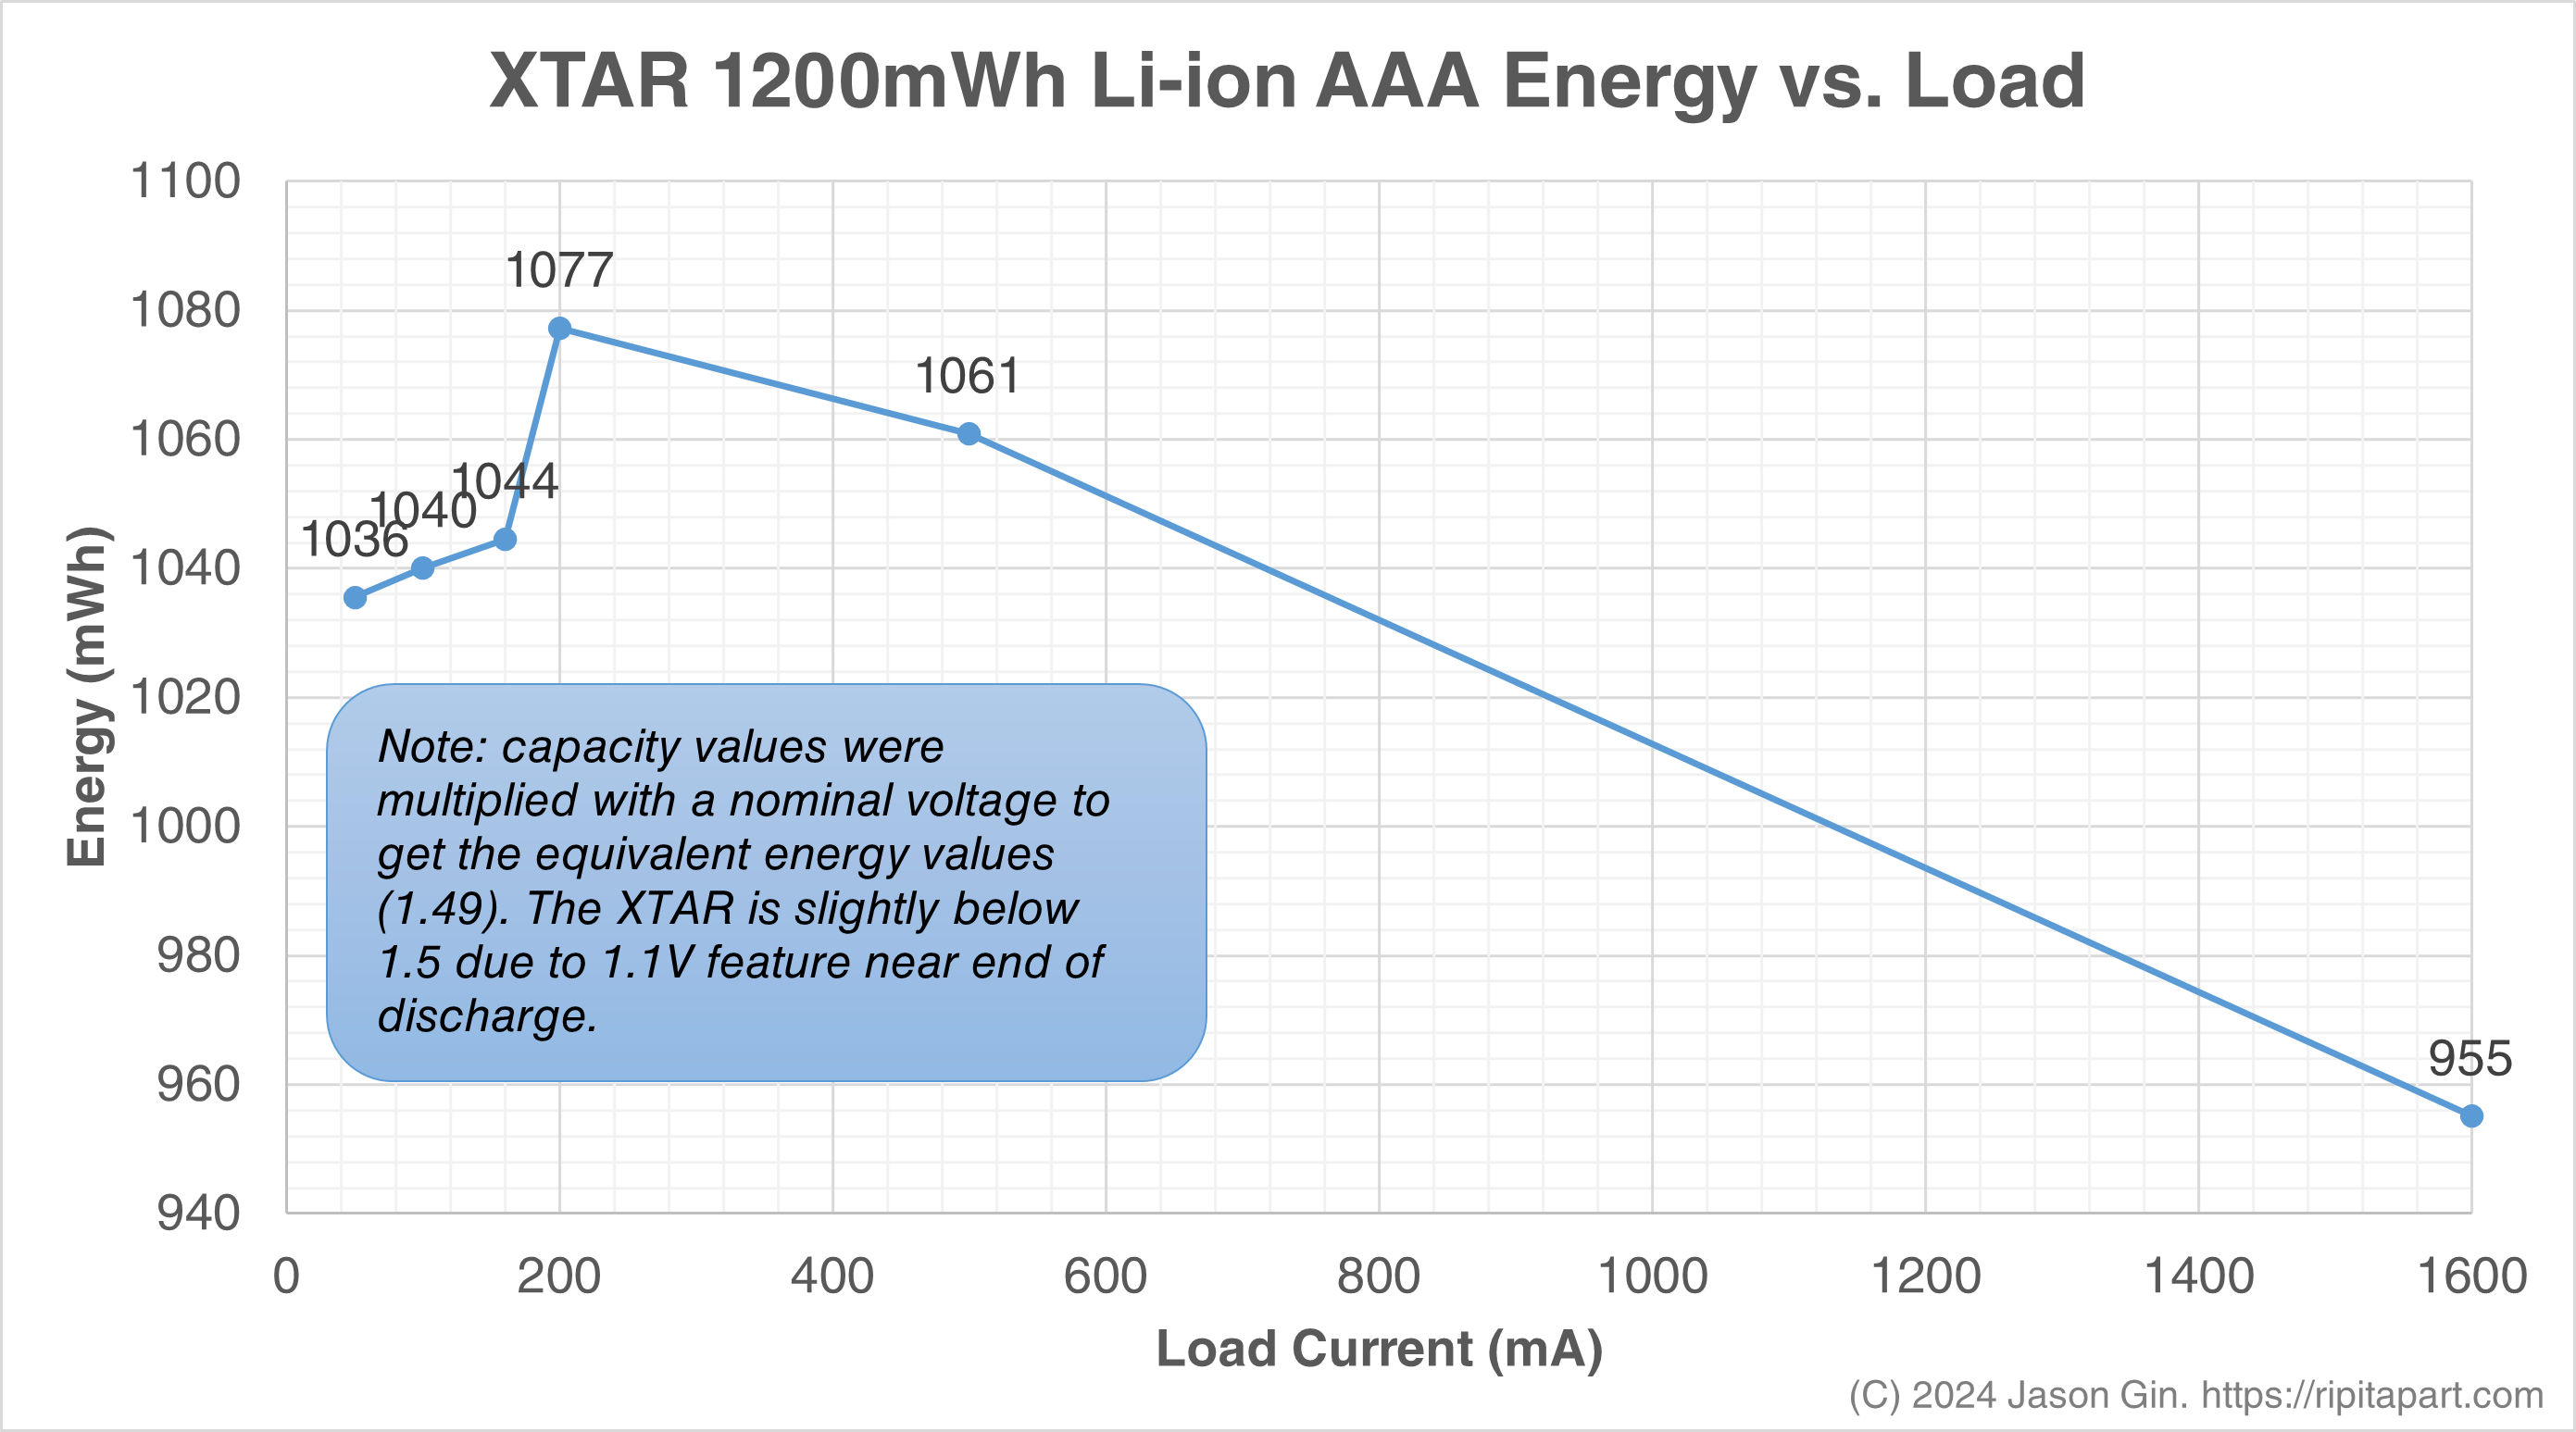 XTAR 1200mWh AAA Energy vs Load